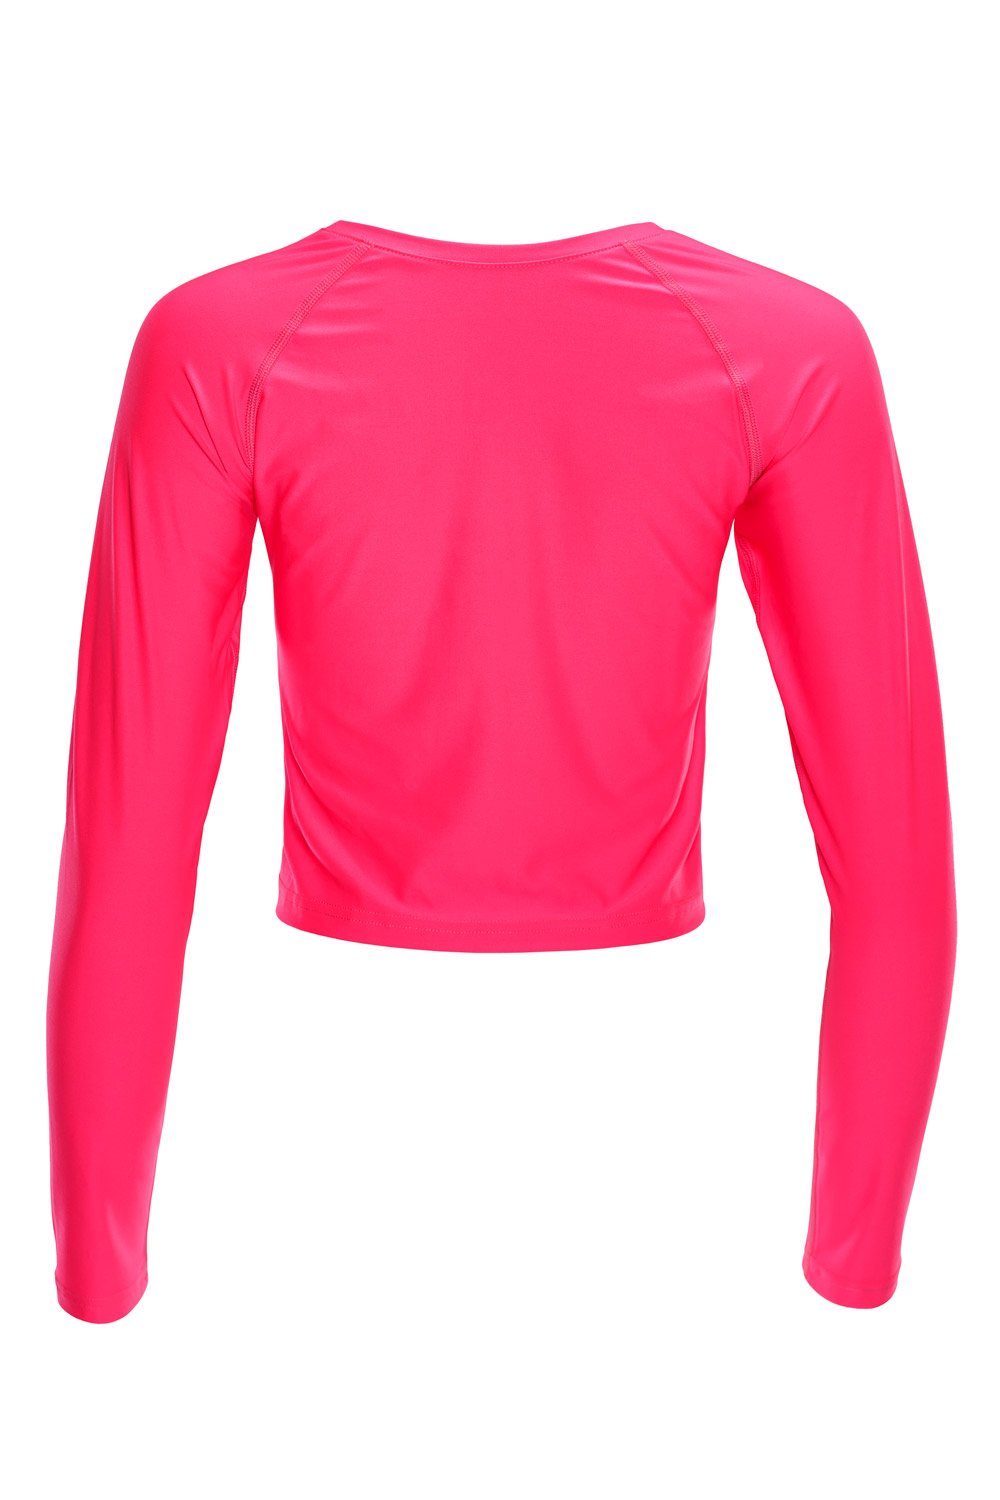 Winshape Light Functional AET116 pink Langarmshirt Cropped neon